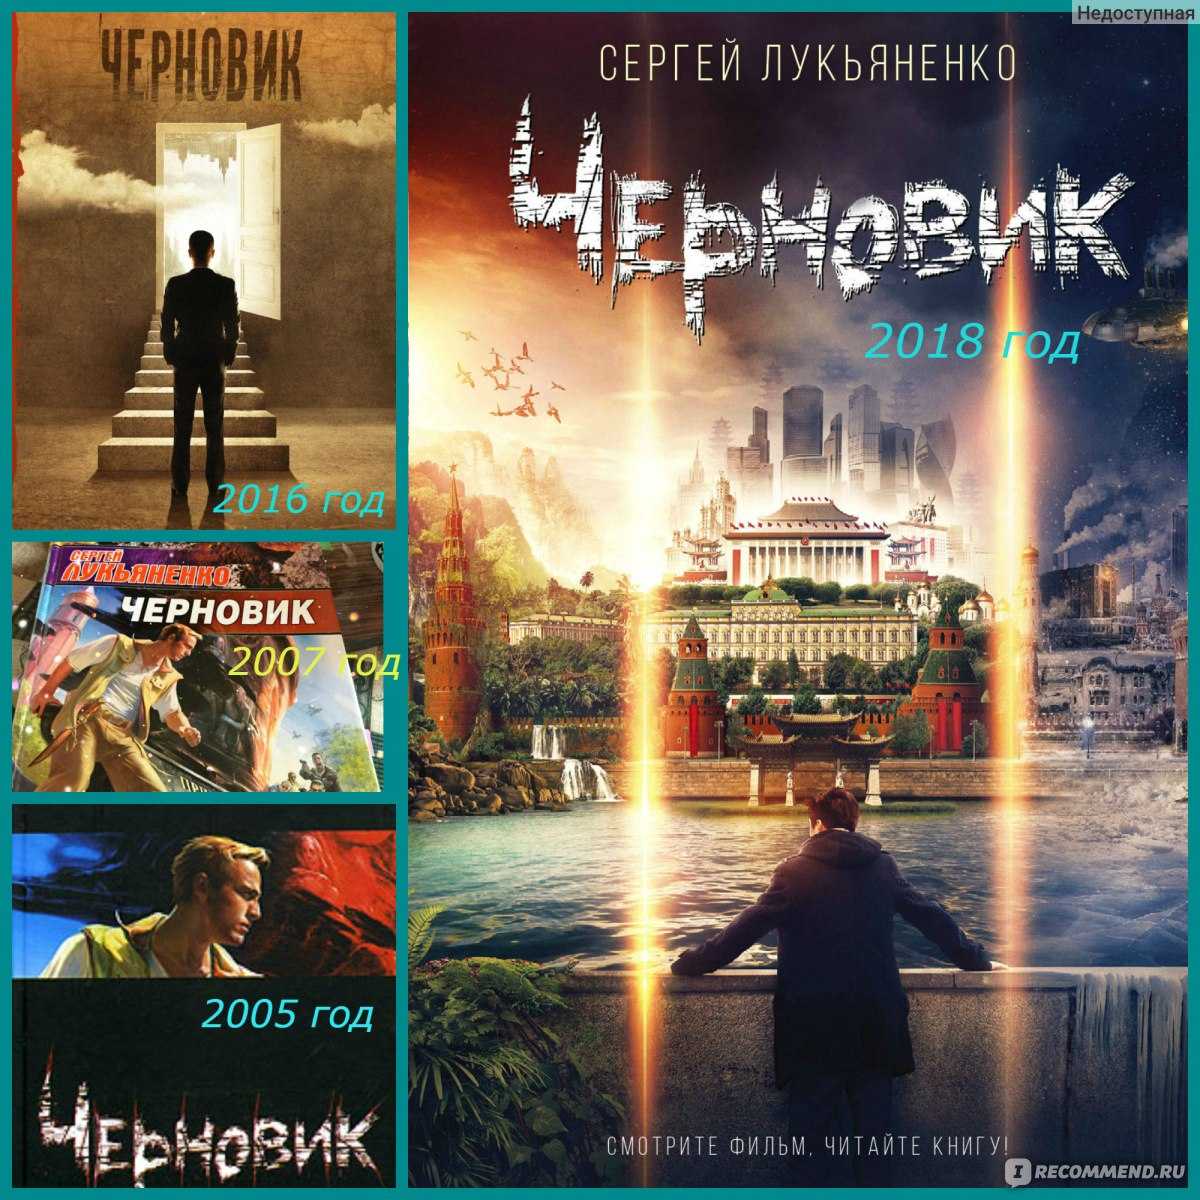 Сергей лукьяненко все книги автора, биография